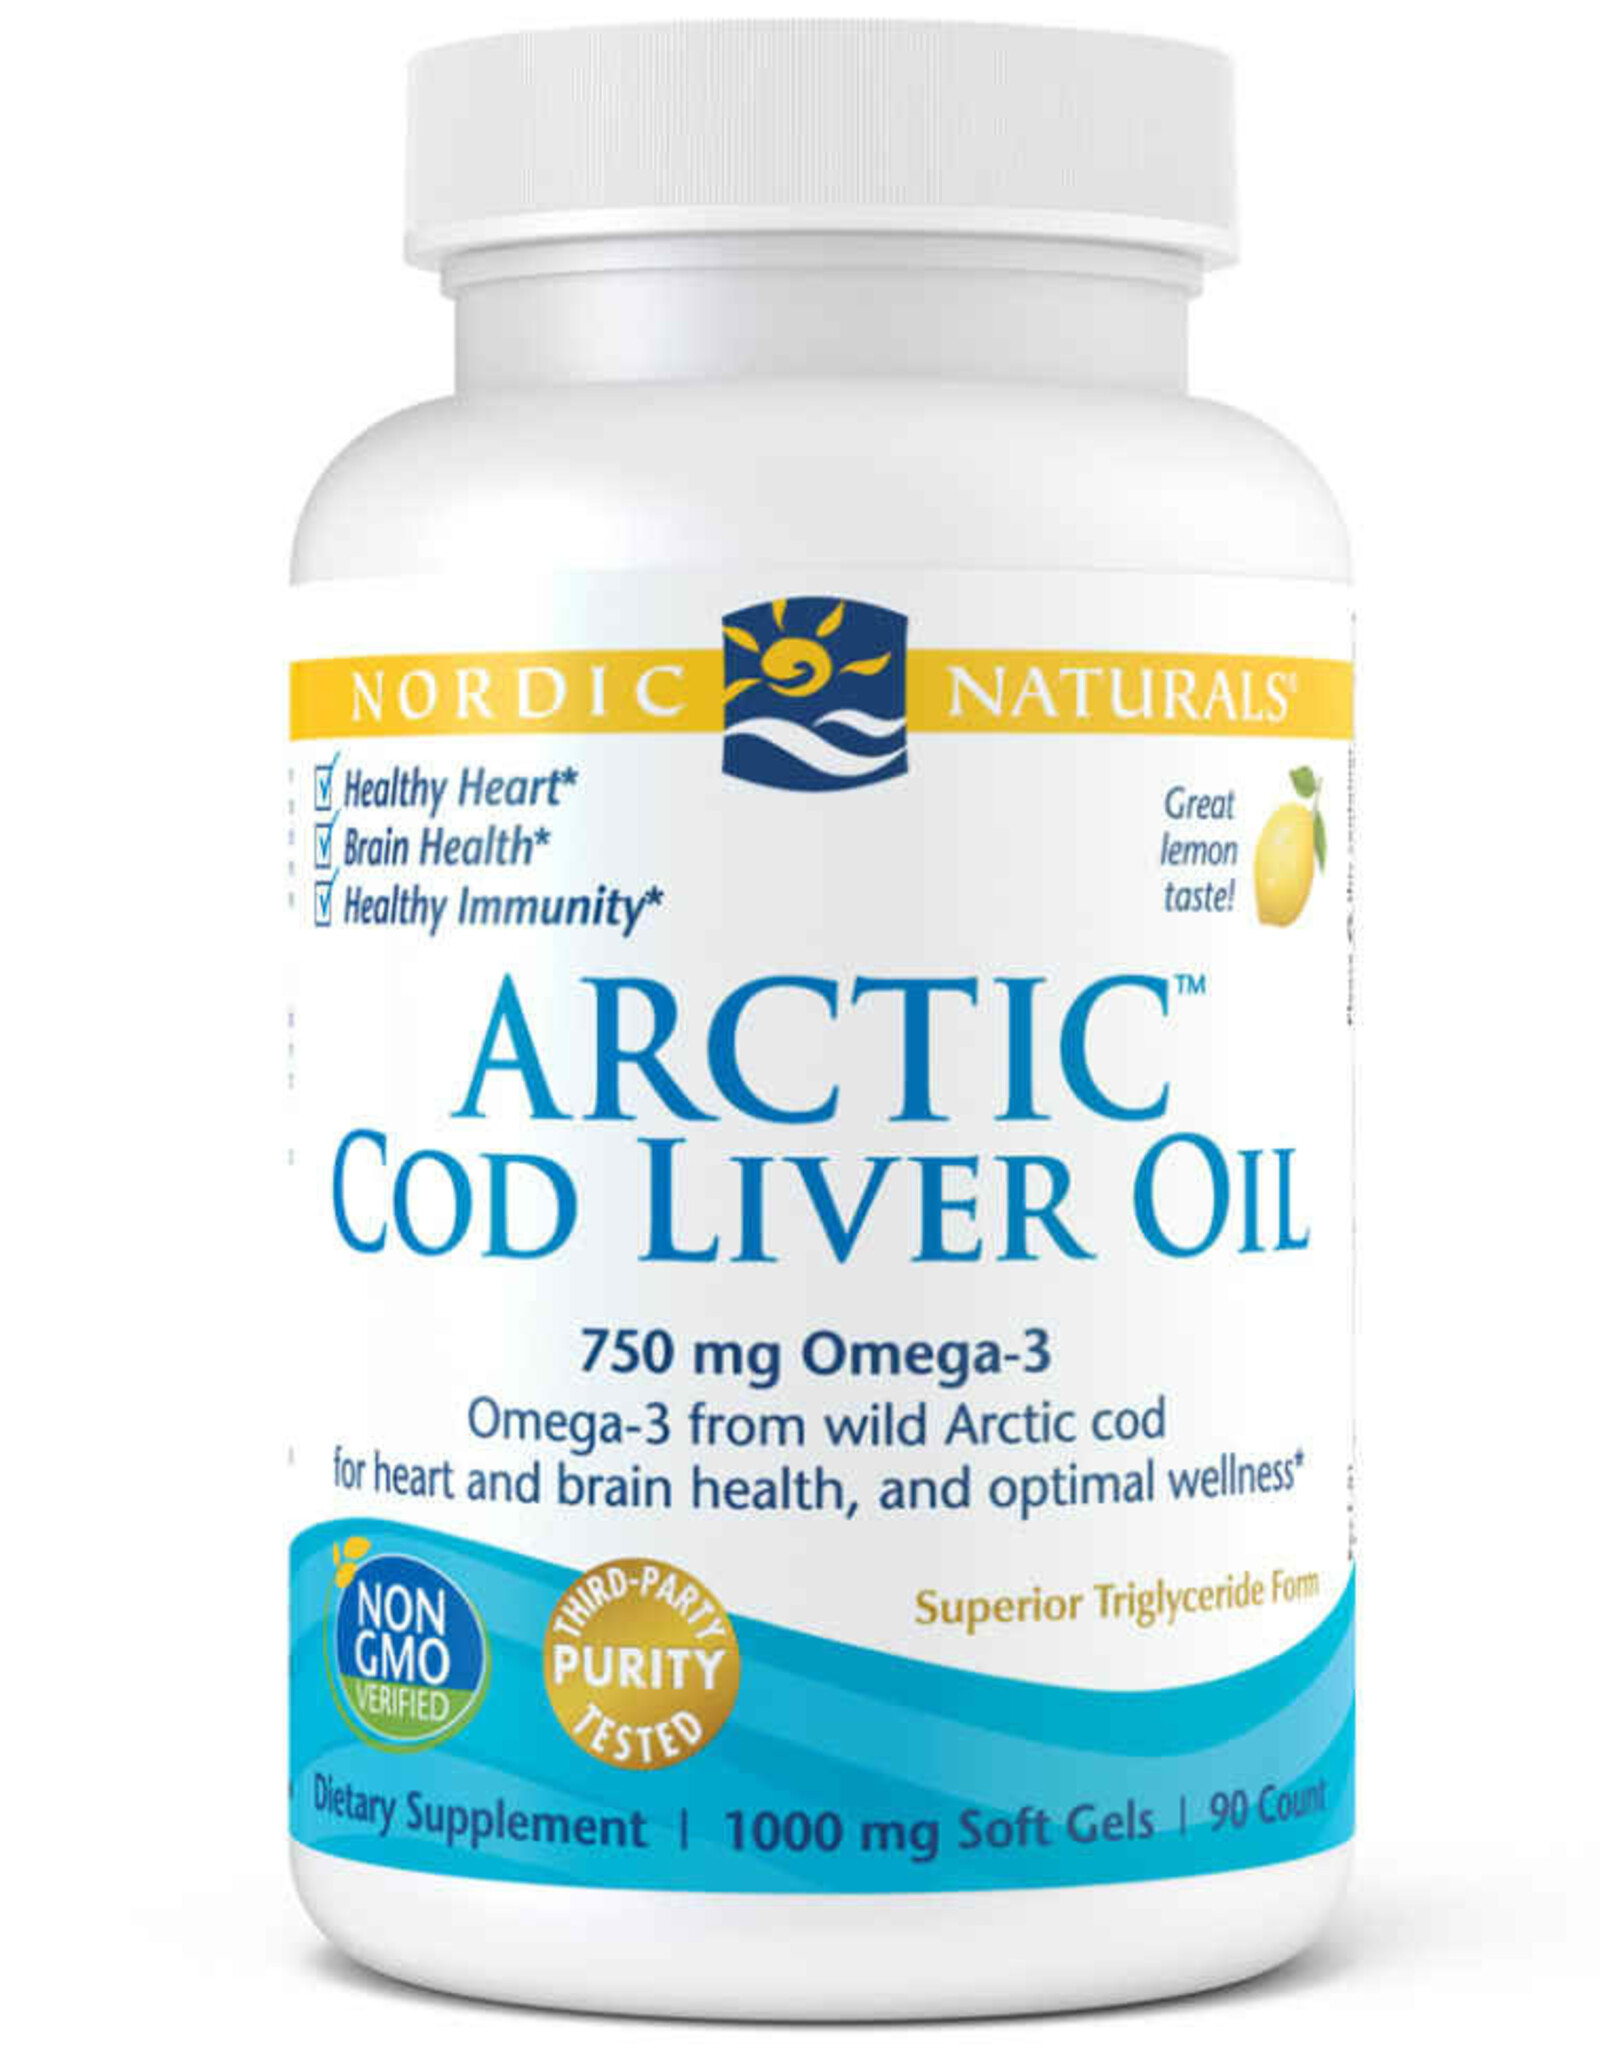 Nordic Naturals Arctic Cod Liver